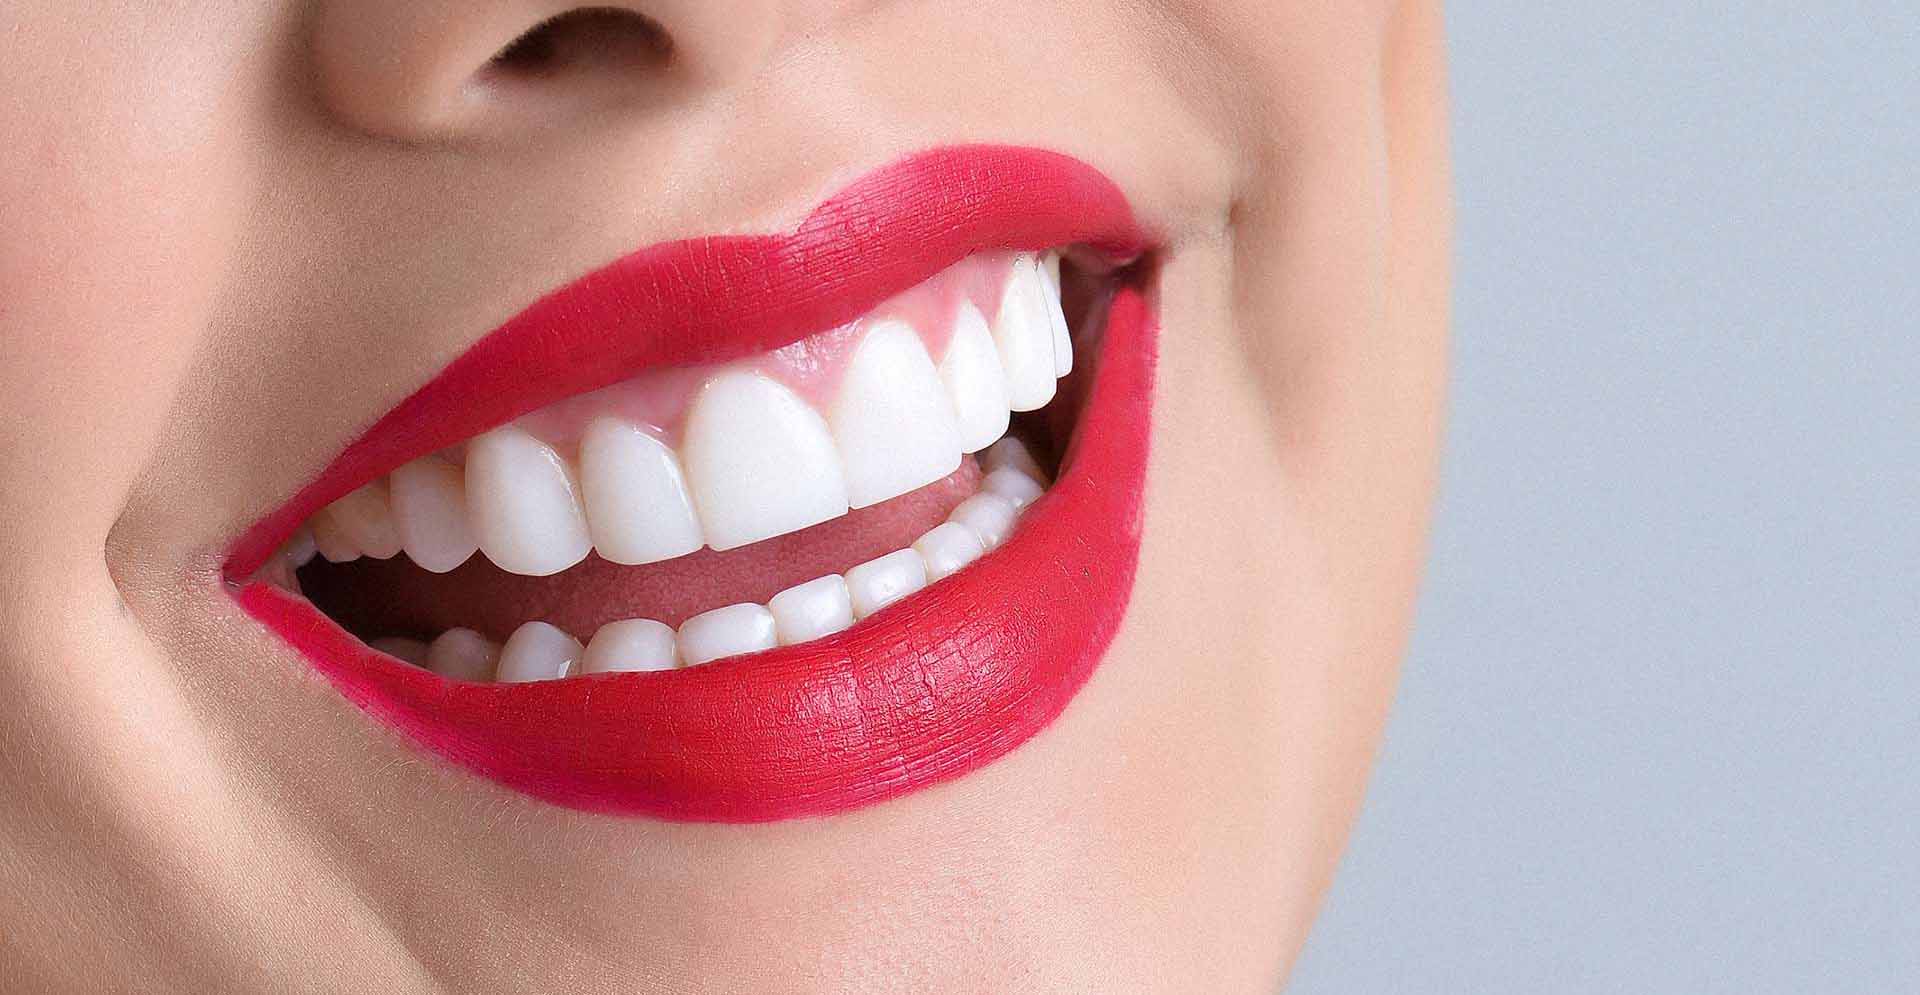 Lo más importante de una buena sonrisa es tener la salud bucal intacta por eso sigue las indicaciones y muestra tus dientes con gusto